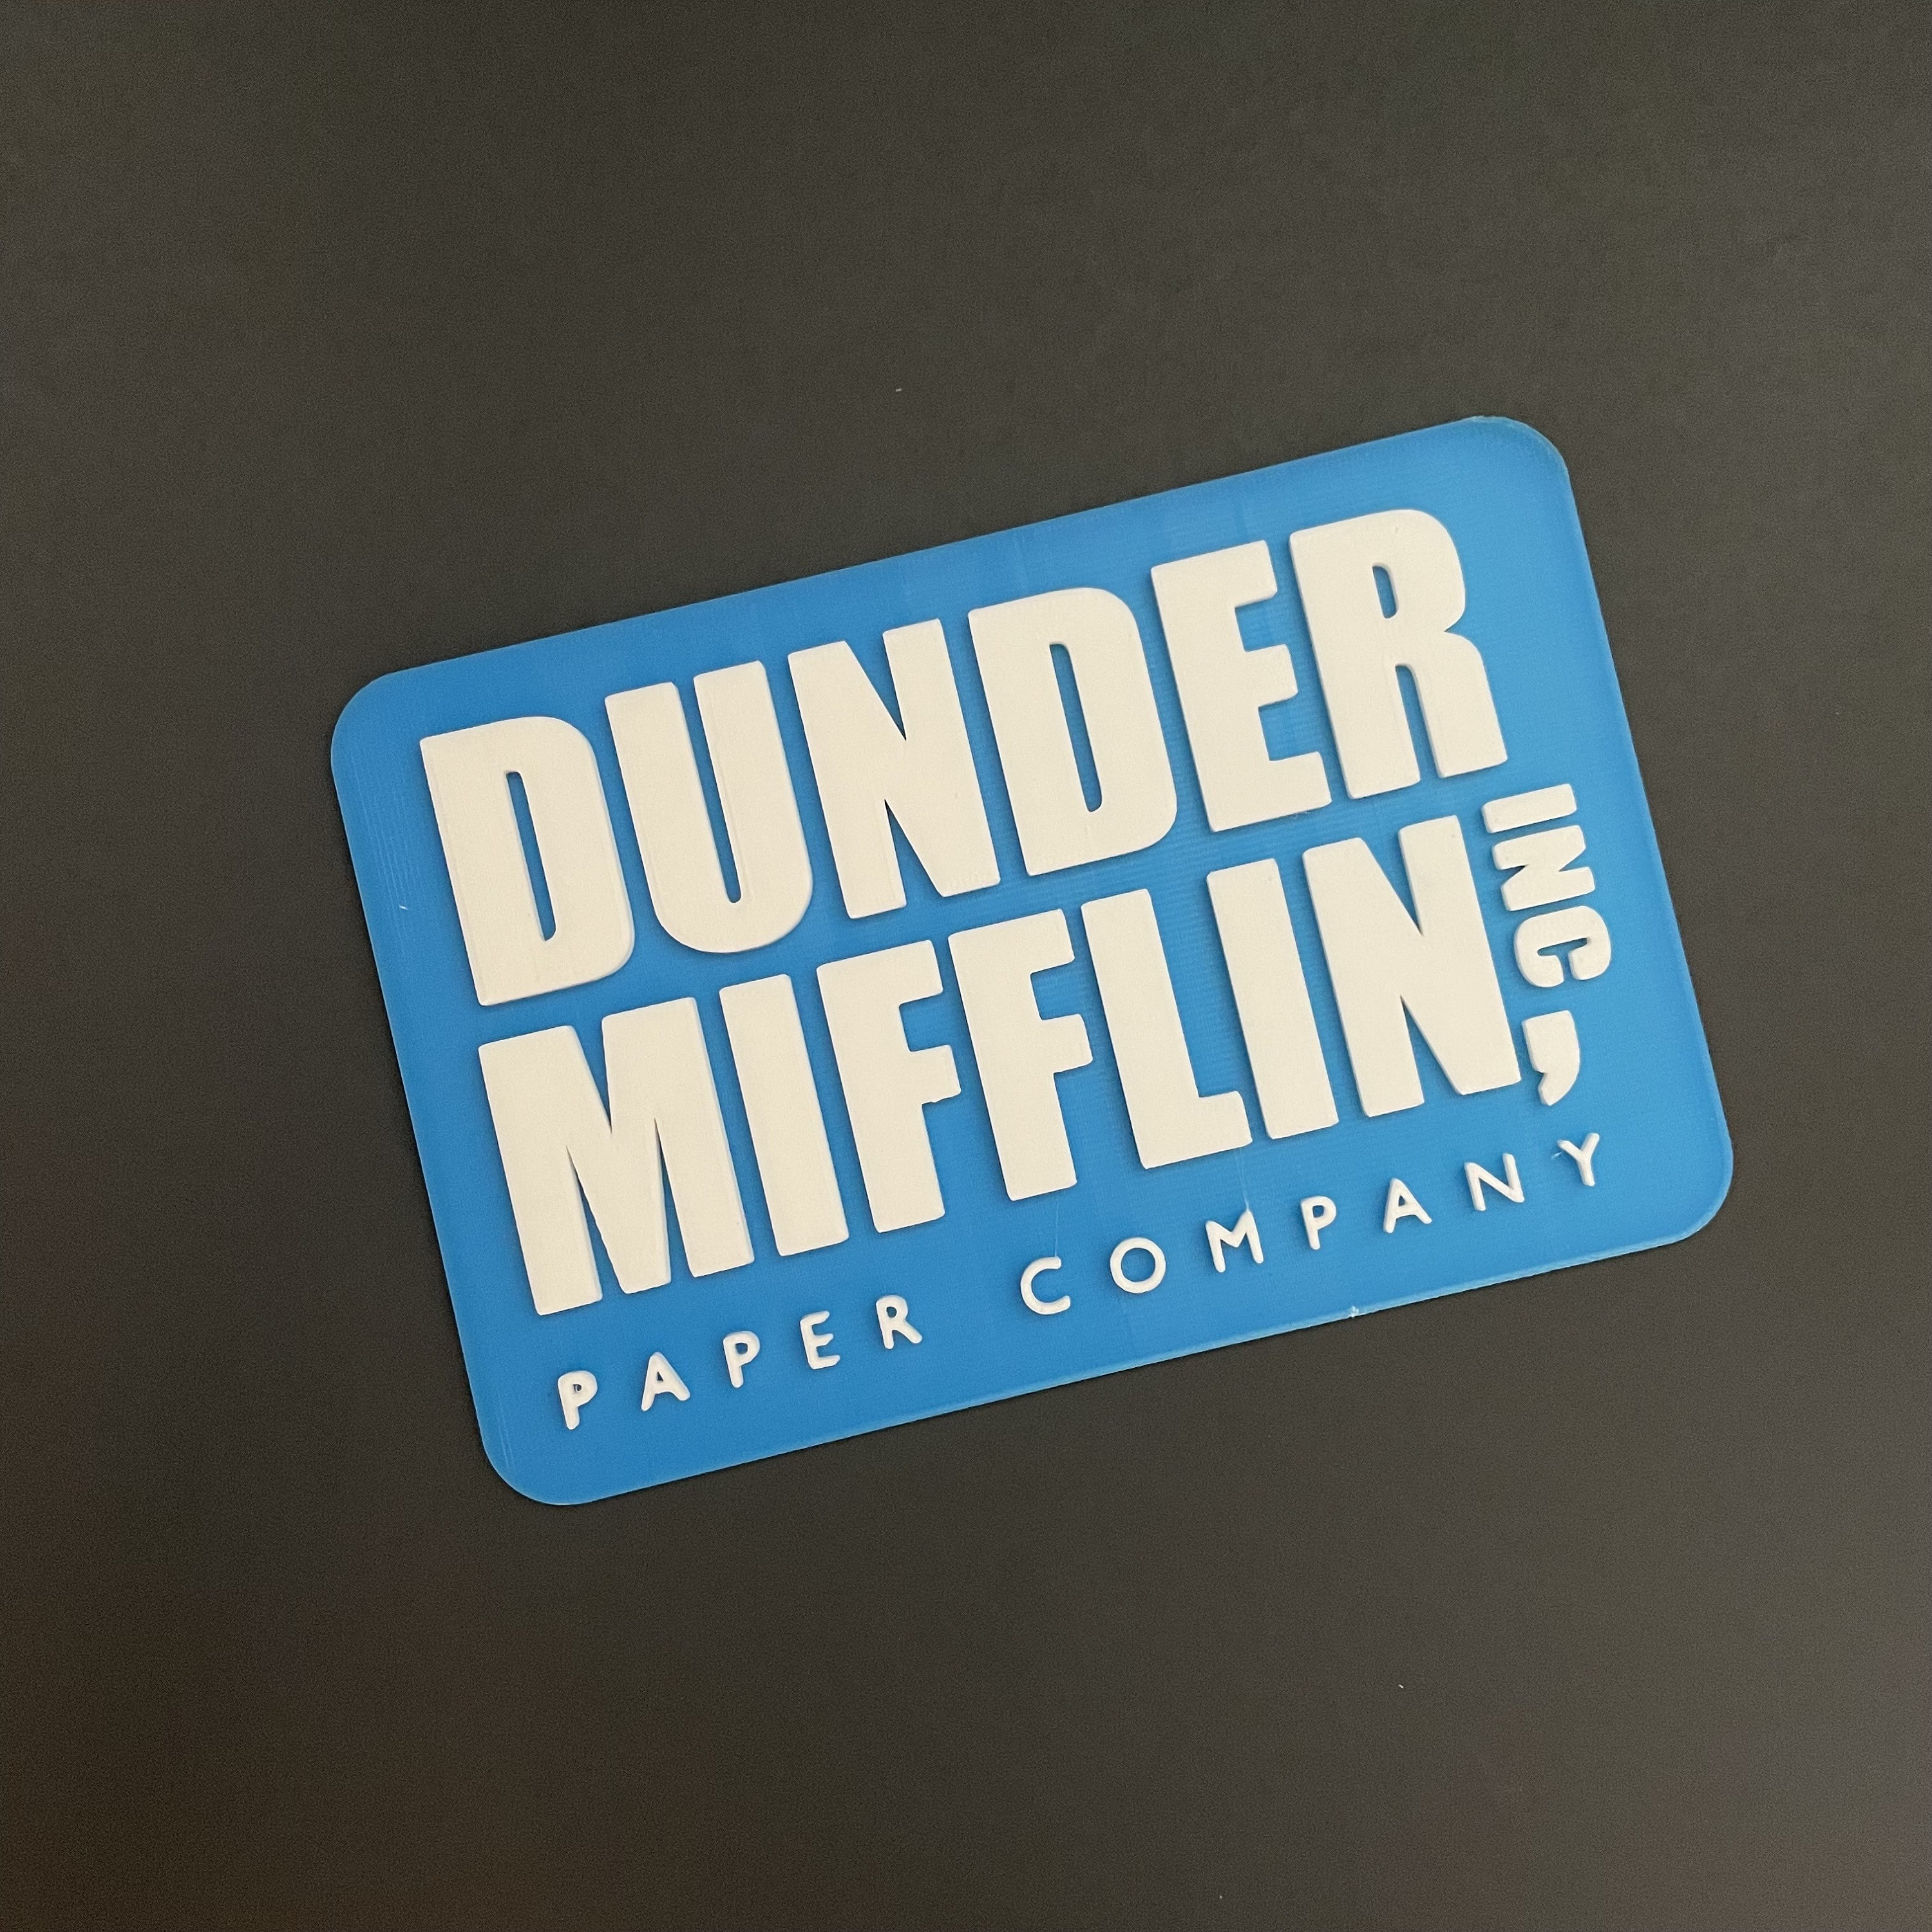 The Office Dunder Mifflin 